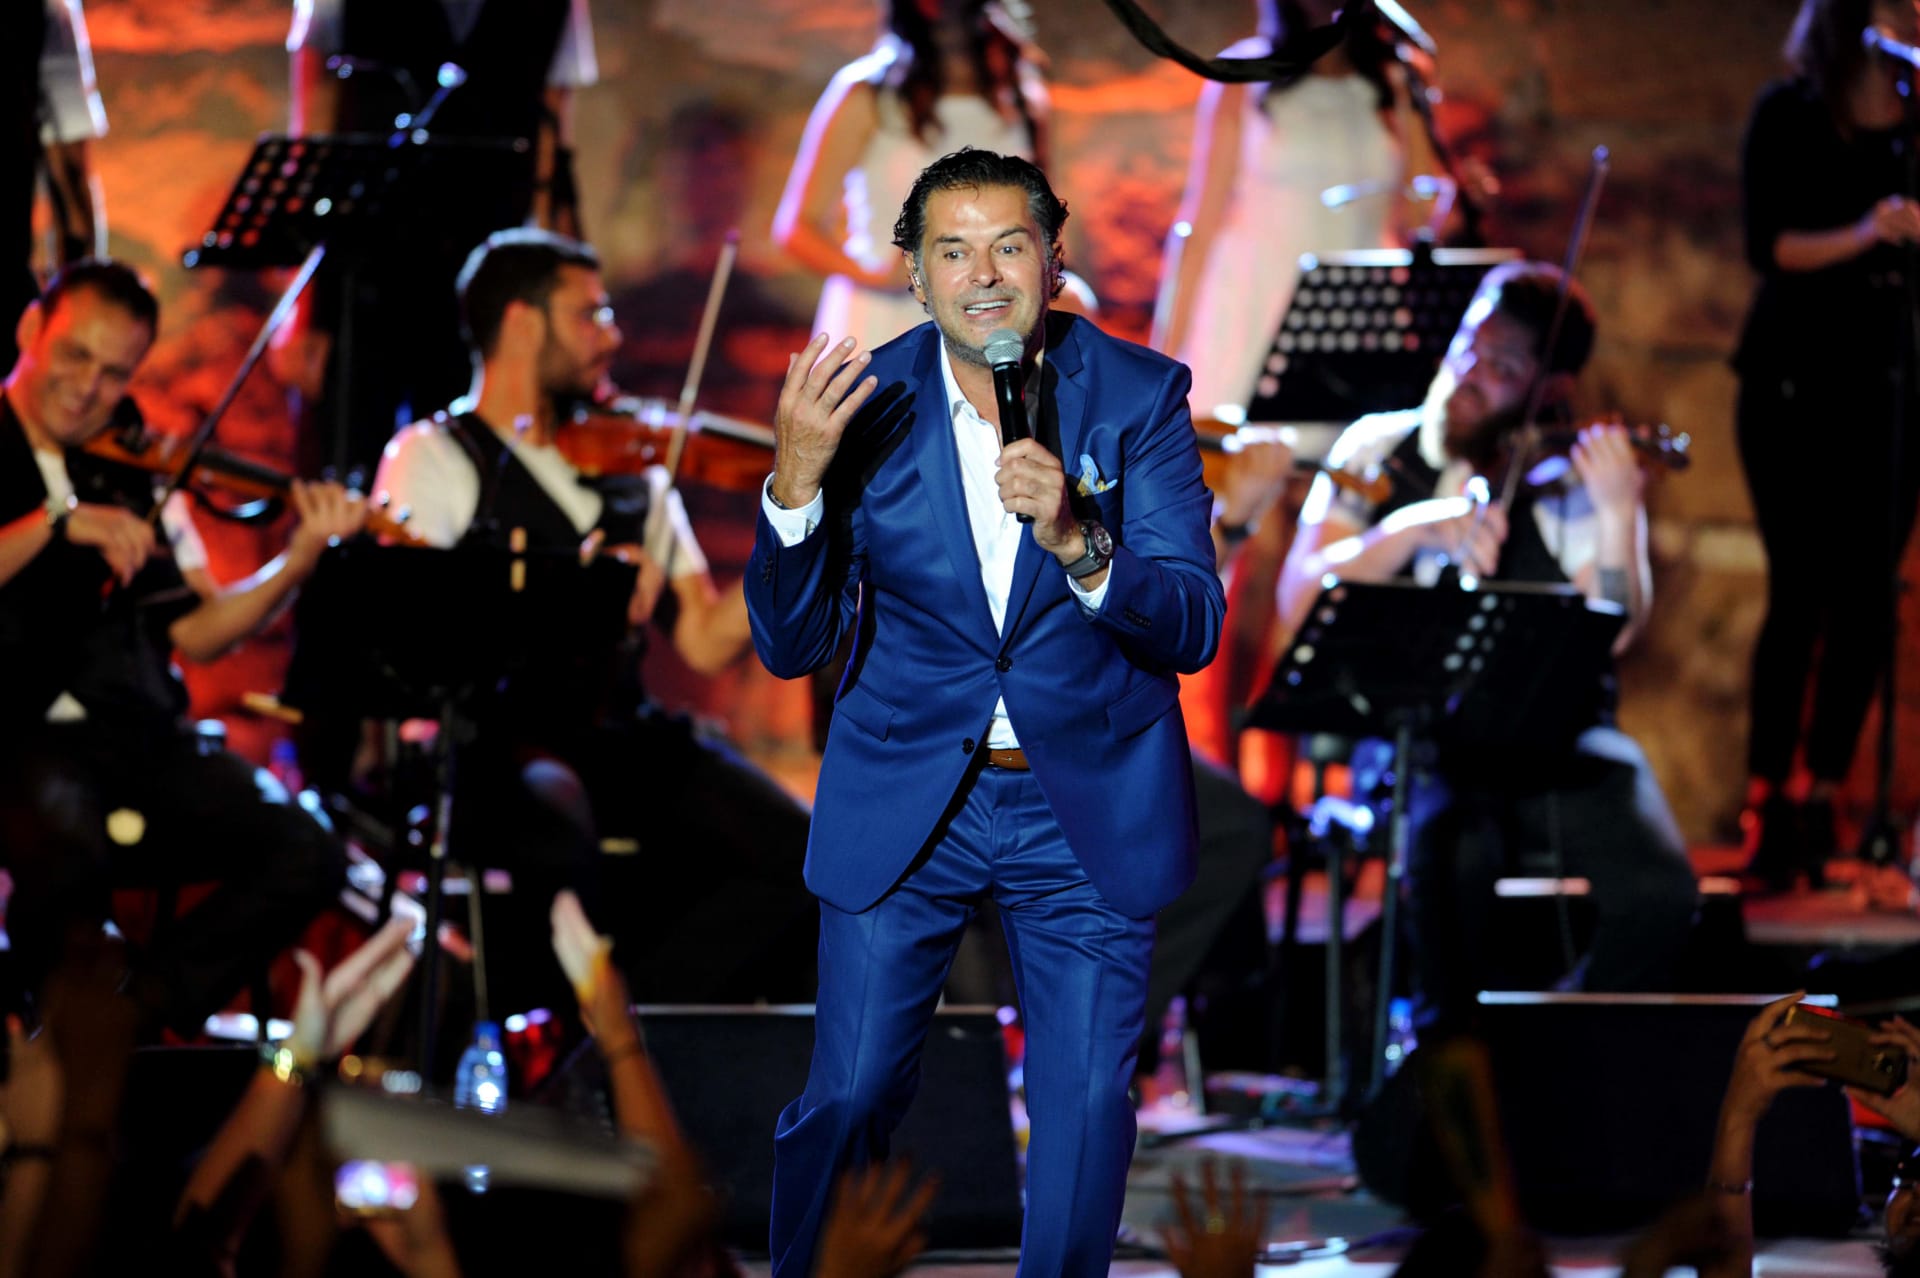 المغني اللبناني راغب علامة خلال الدورة الثالثة والخمسين لمهرجان قرطاج الدولي